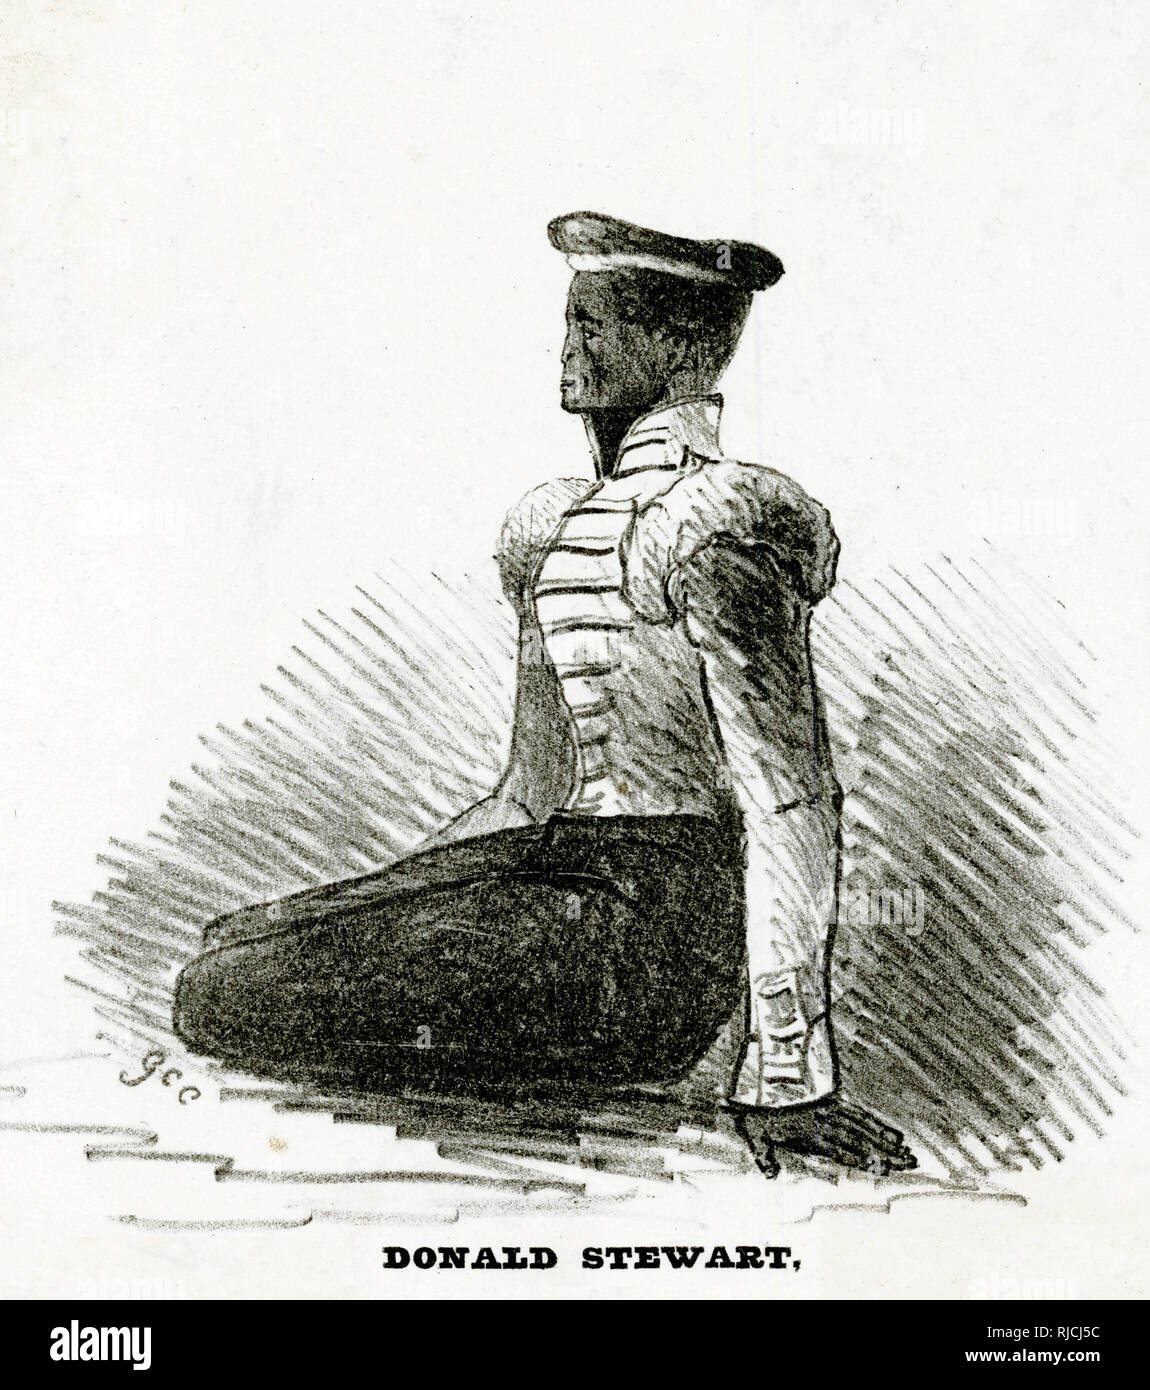 Donald Stewart, de l'ouest de l'Inde britannique Premier régiment, qui était composé presque entièrement d'hommes noirs enlevés, s'agenouille en préparation de son exécution le 16 août, de diriger une mutinerie de 280 soldats contre les Britanniques. Il était auparavant un chef nommé Daaga africaine, qui a vendu en esclavage les hommes Yoruba avant d'être capturé lui-même. Il a été conduit à la Trinité en tant que soldat, et rebaptisé Donald Stewart. Banque D'Images